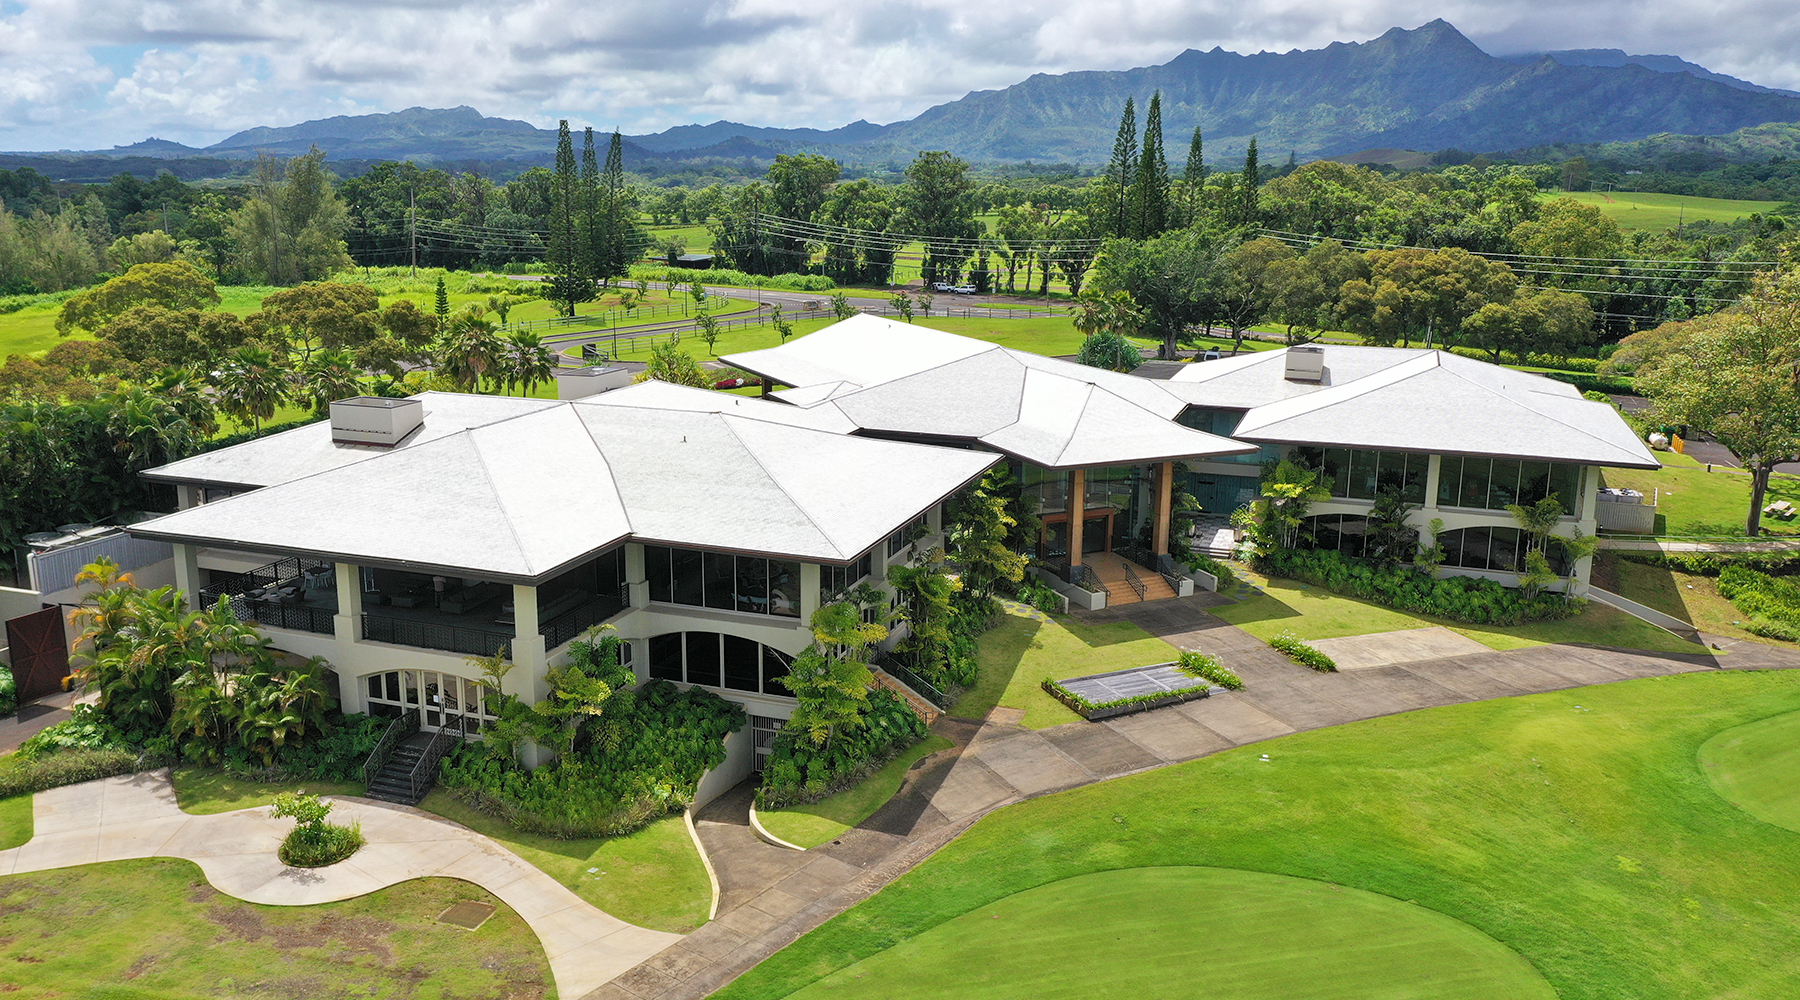 Kauai Golf Course, Cedar Roof